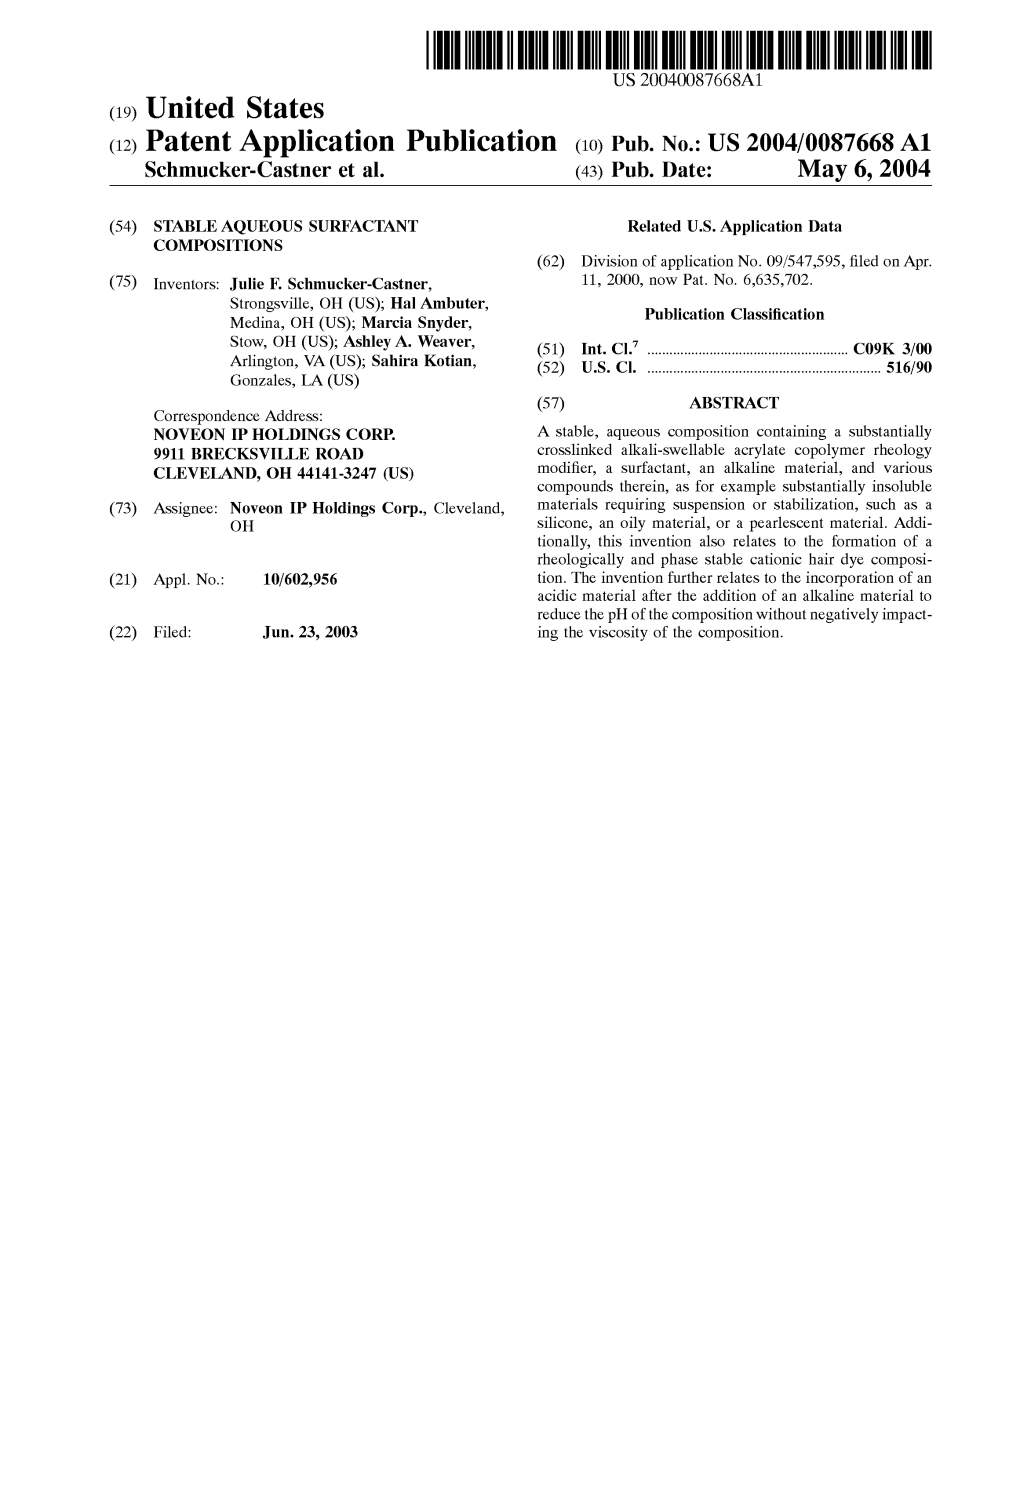 (12) Patent Application Publication (10) Pub. No.: US 2004/0087668A1 Schmucker-Castner Et Al